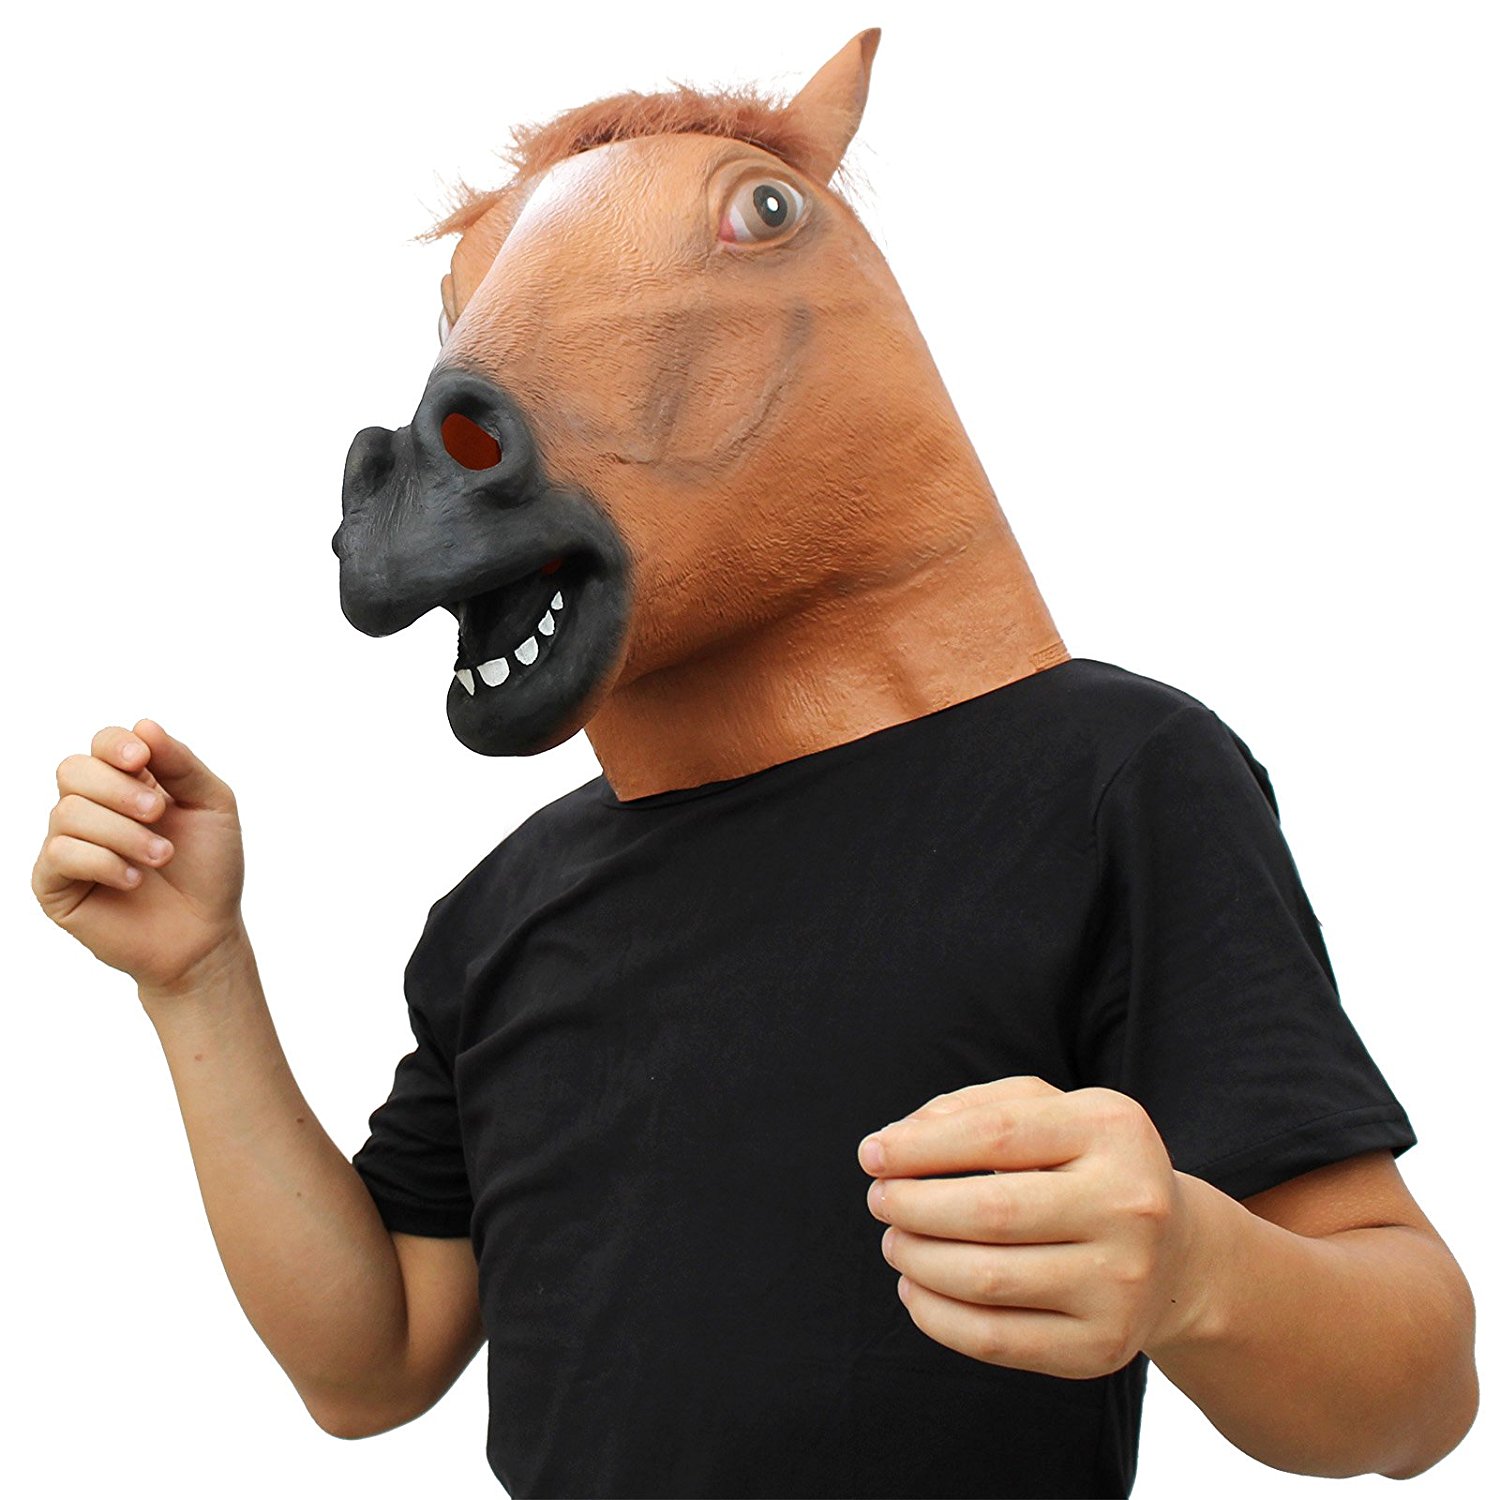 एक मुखौटा के रूप में घोड़े का सिर